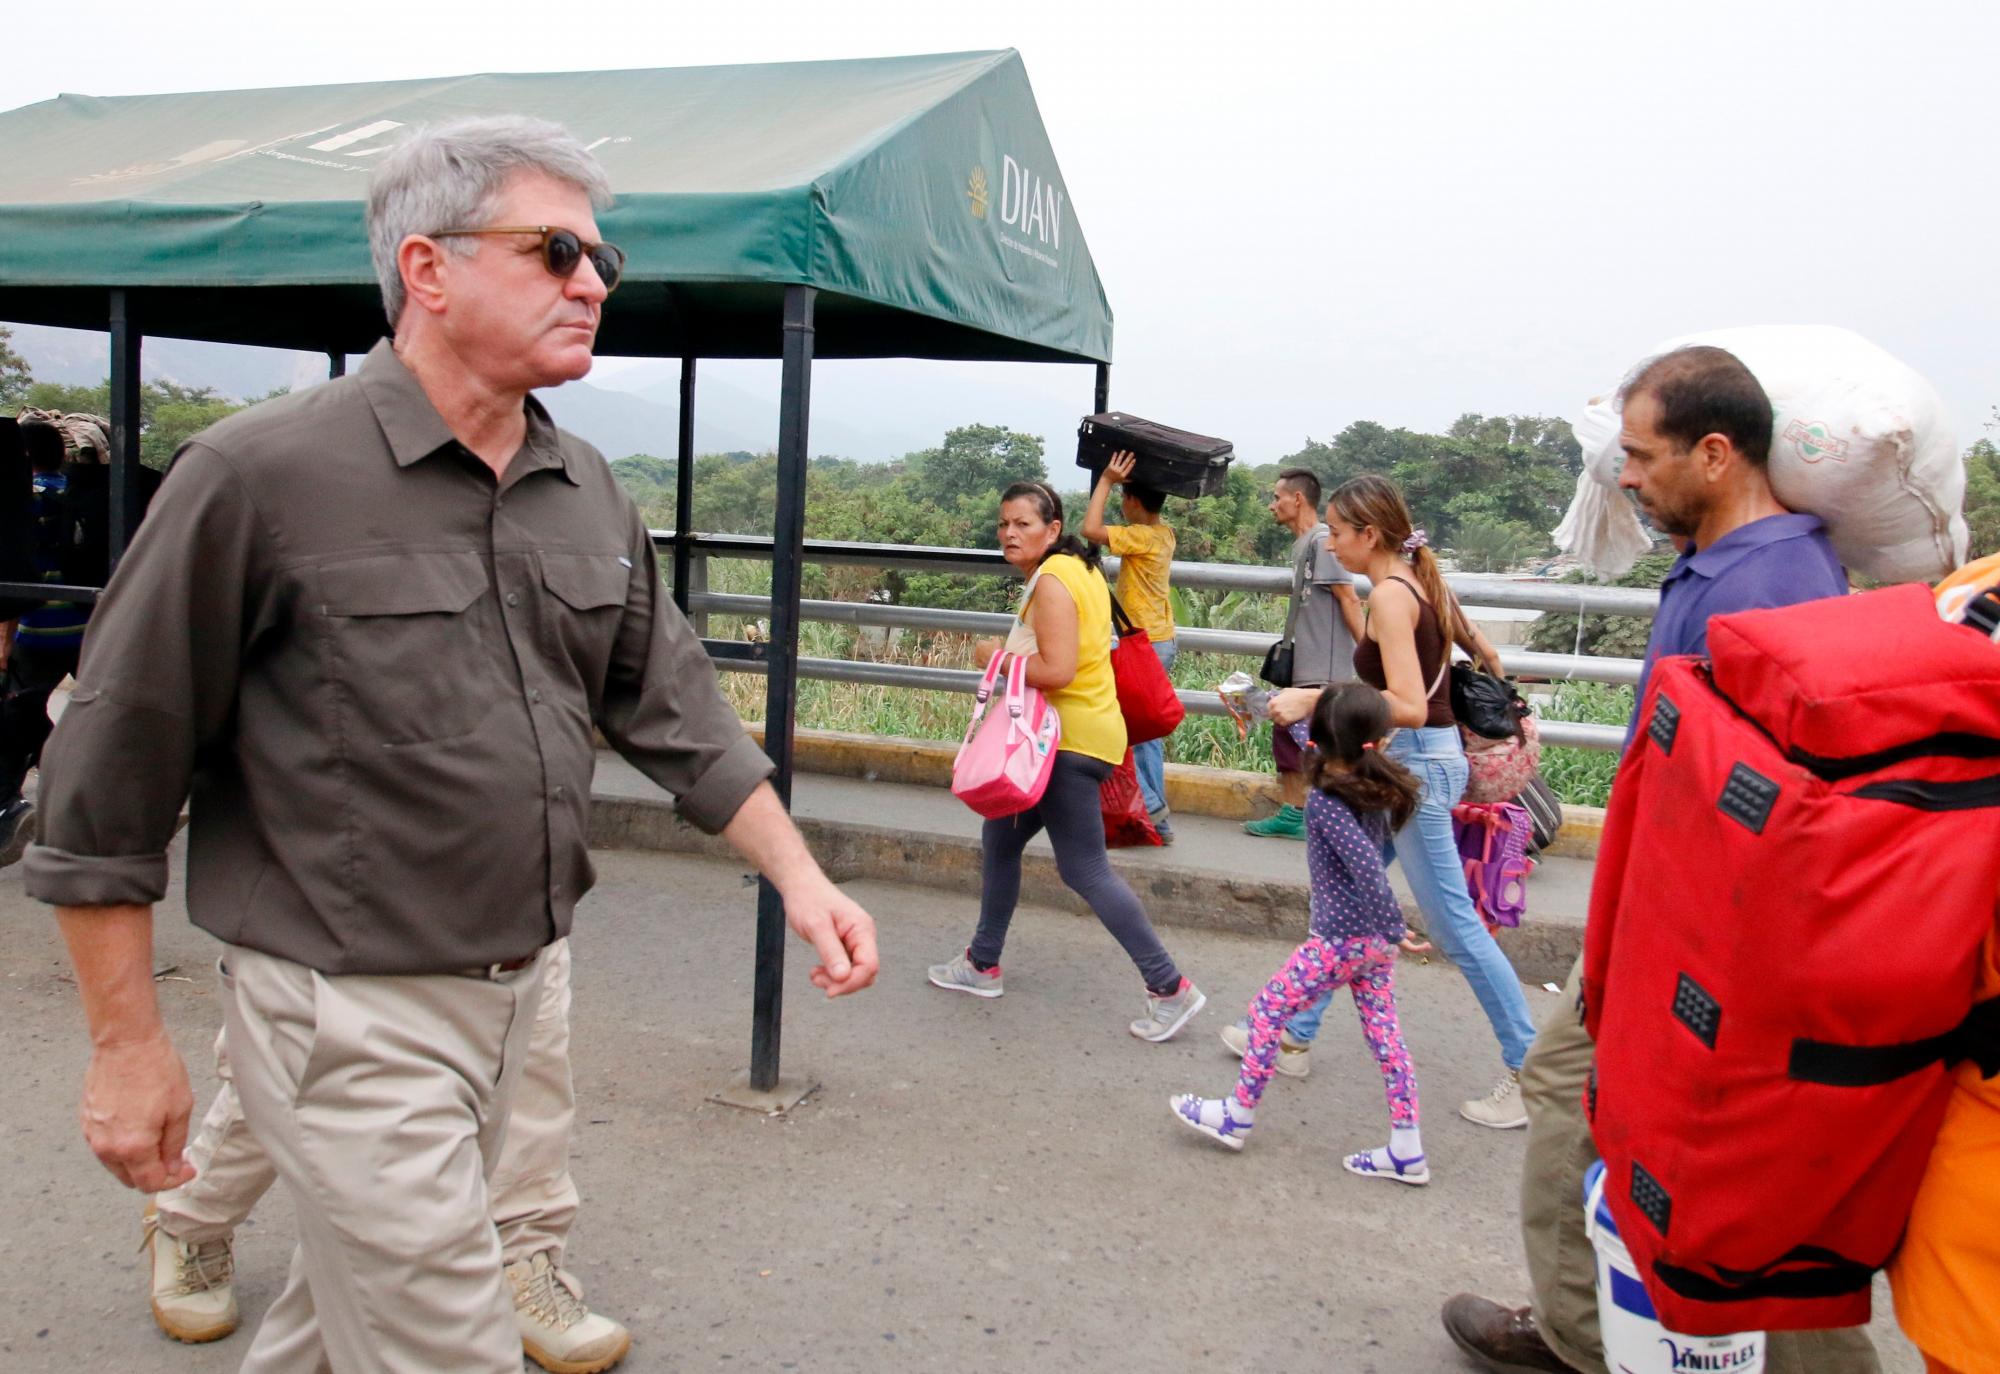 El senador estadounidense Michael McCaul camina este viernes, durante una vista que realizaron varios senadores norteamericanos al puente internacional Simón Bolívar, en la frontera entre Cúcuta (Colombia) y Venezuela. 